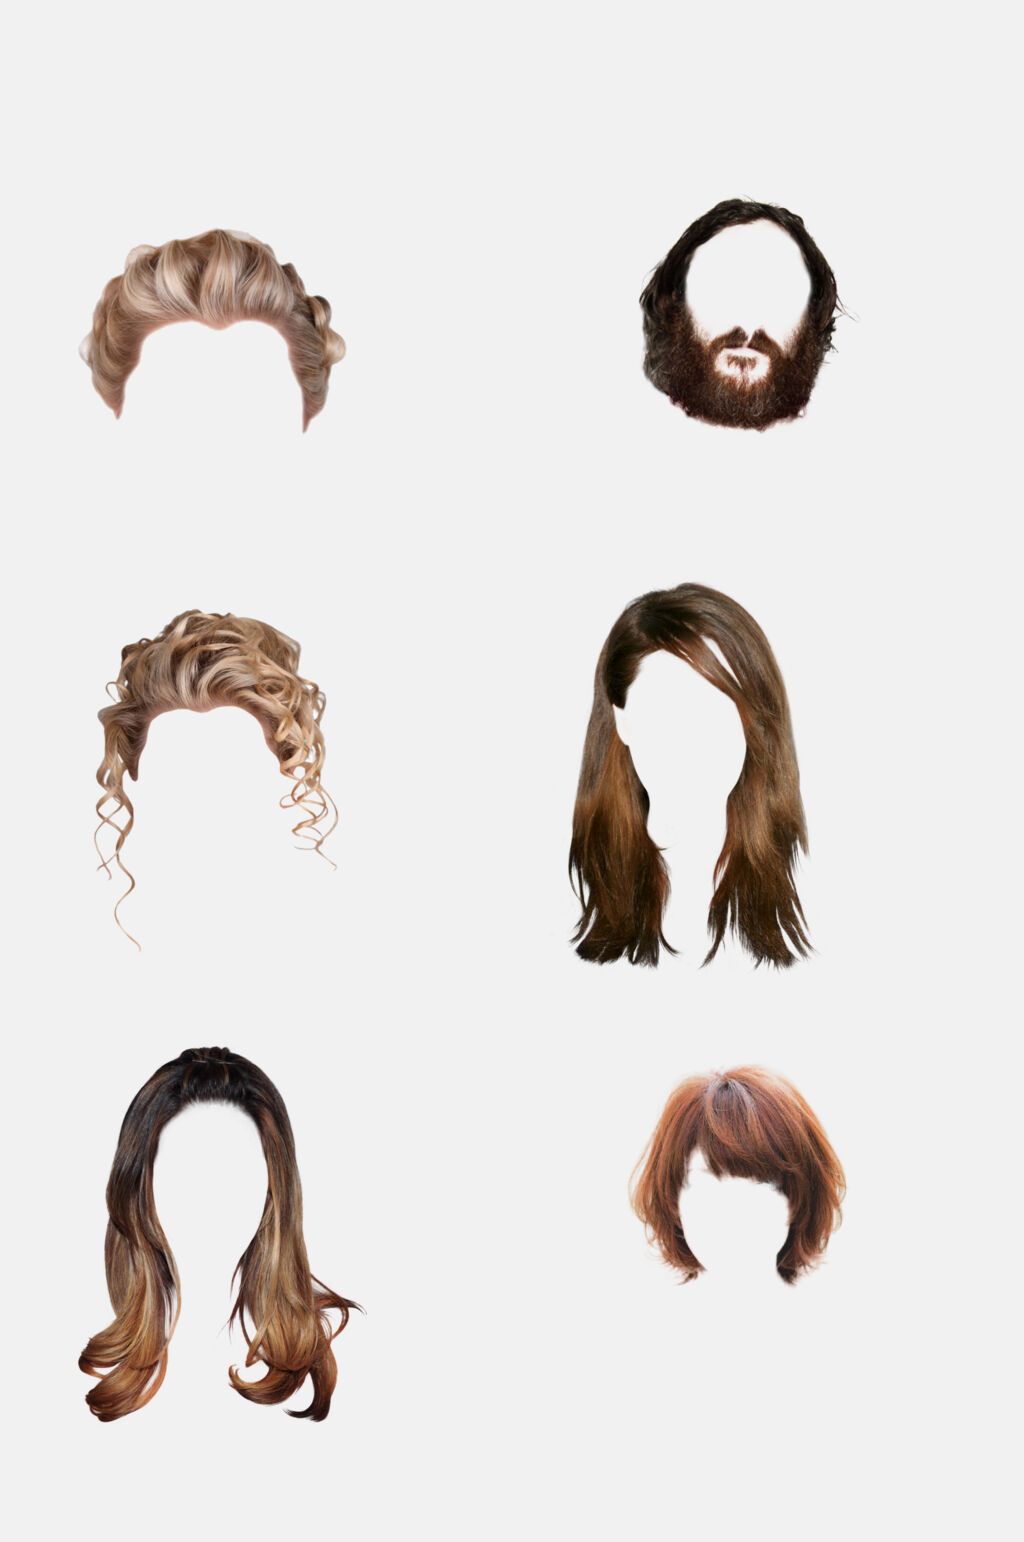 众图网独家提供发型头发免抠设计素材素材免费下载,本作品是由小红